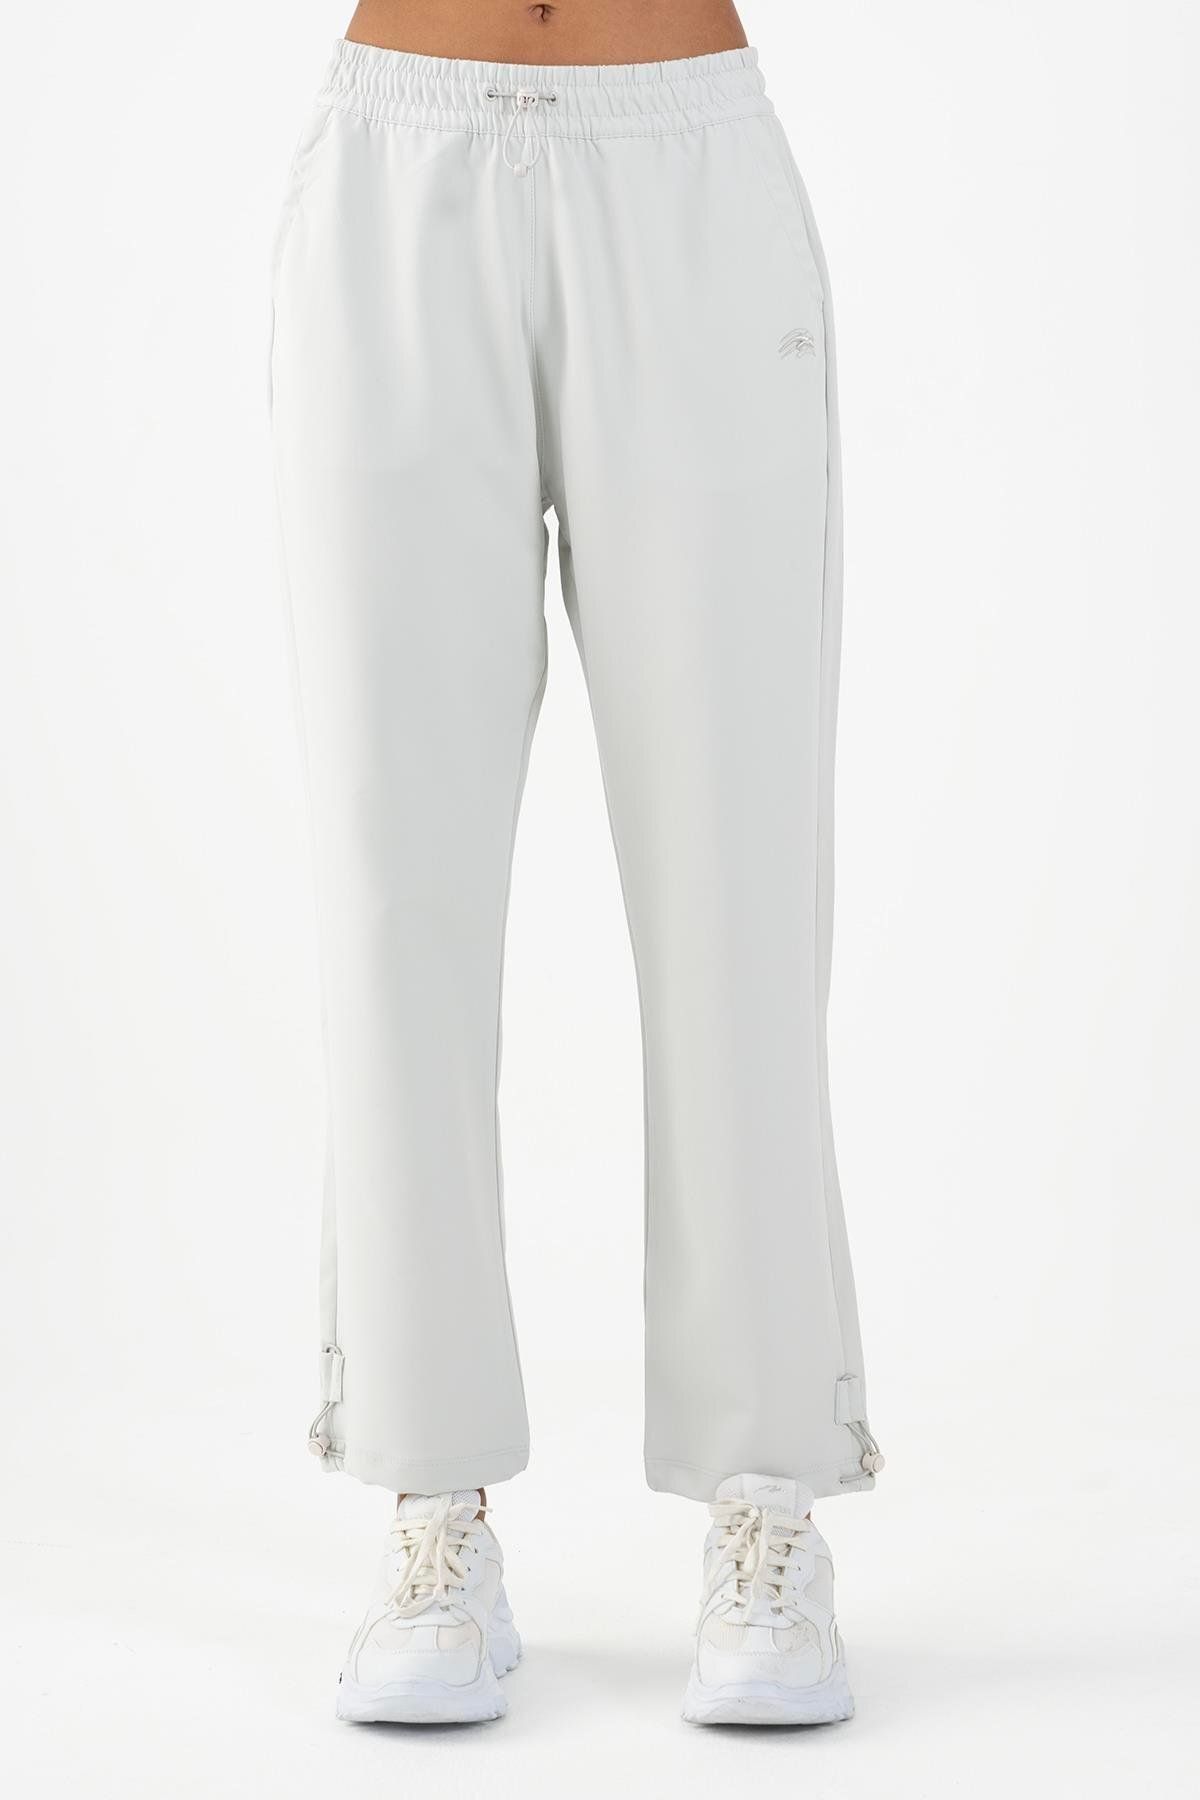 MARATON Sportswear Comfort Kadın Dönüşlü Paça Basic Gümüş Gri Pantolon 22081